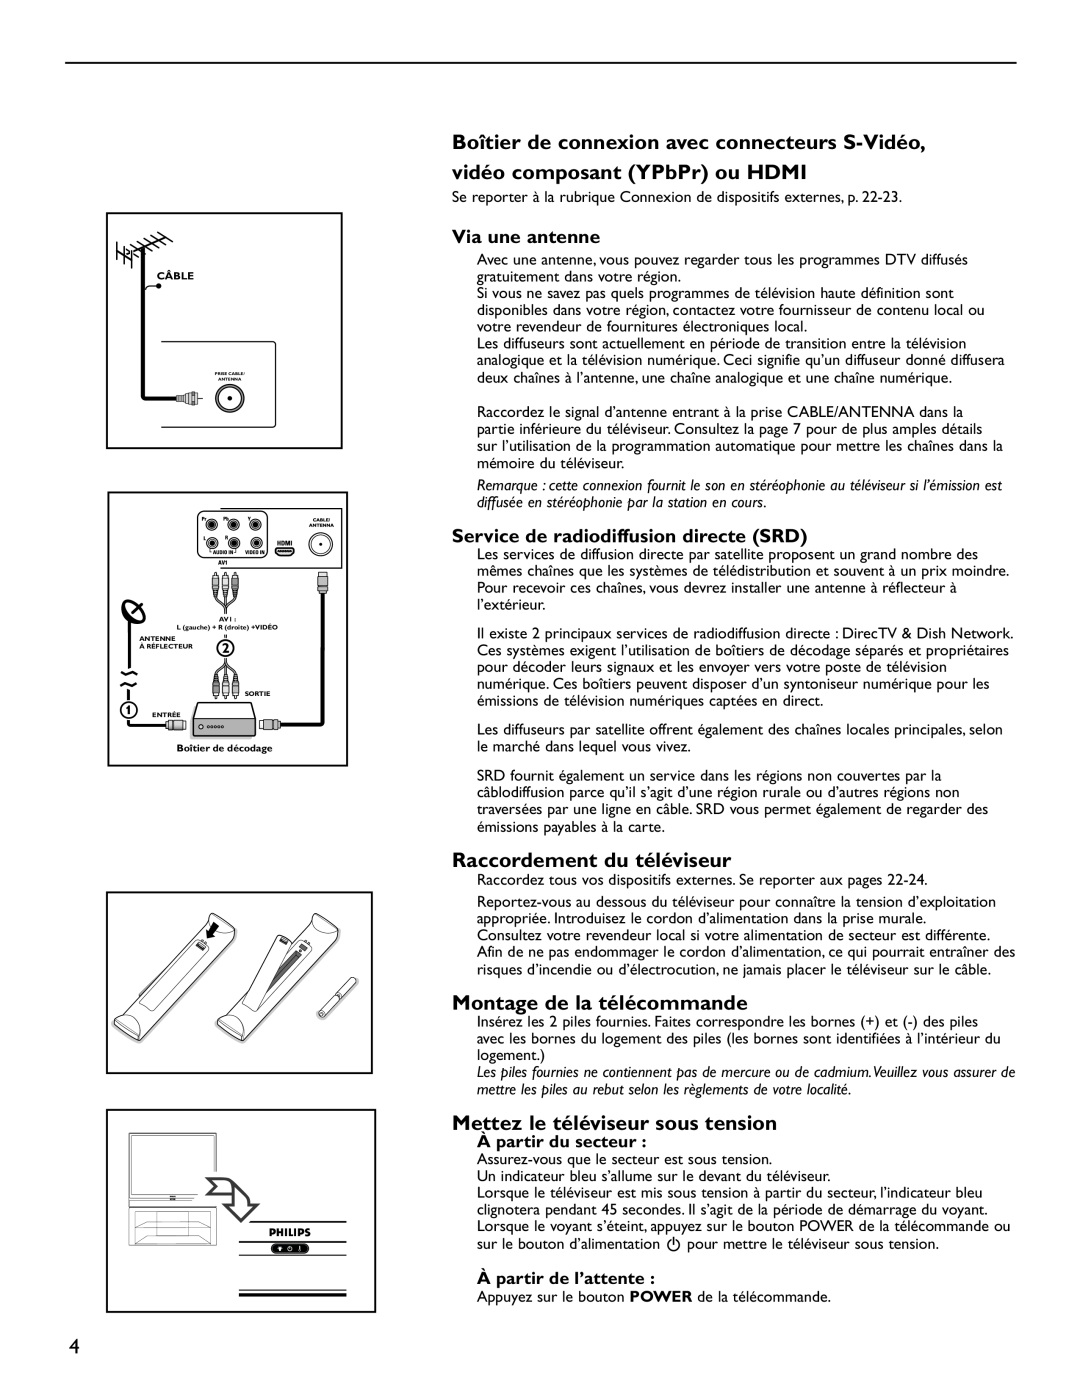 Philips 60PL9220D user manual Raccordement du téléviseur, Montage de la télécommande, Mettez le téléviseur sous tension 